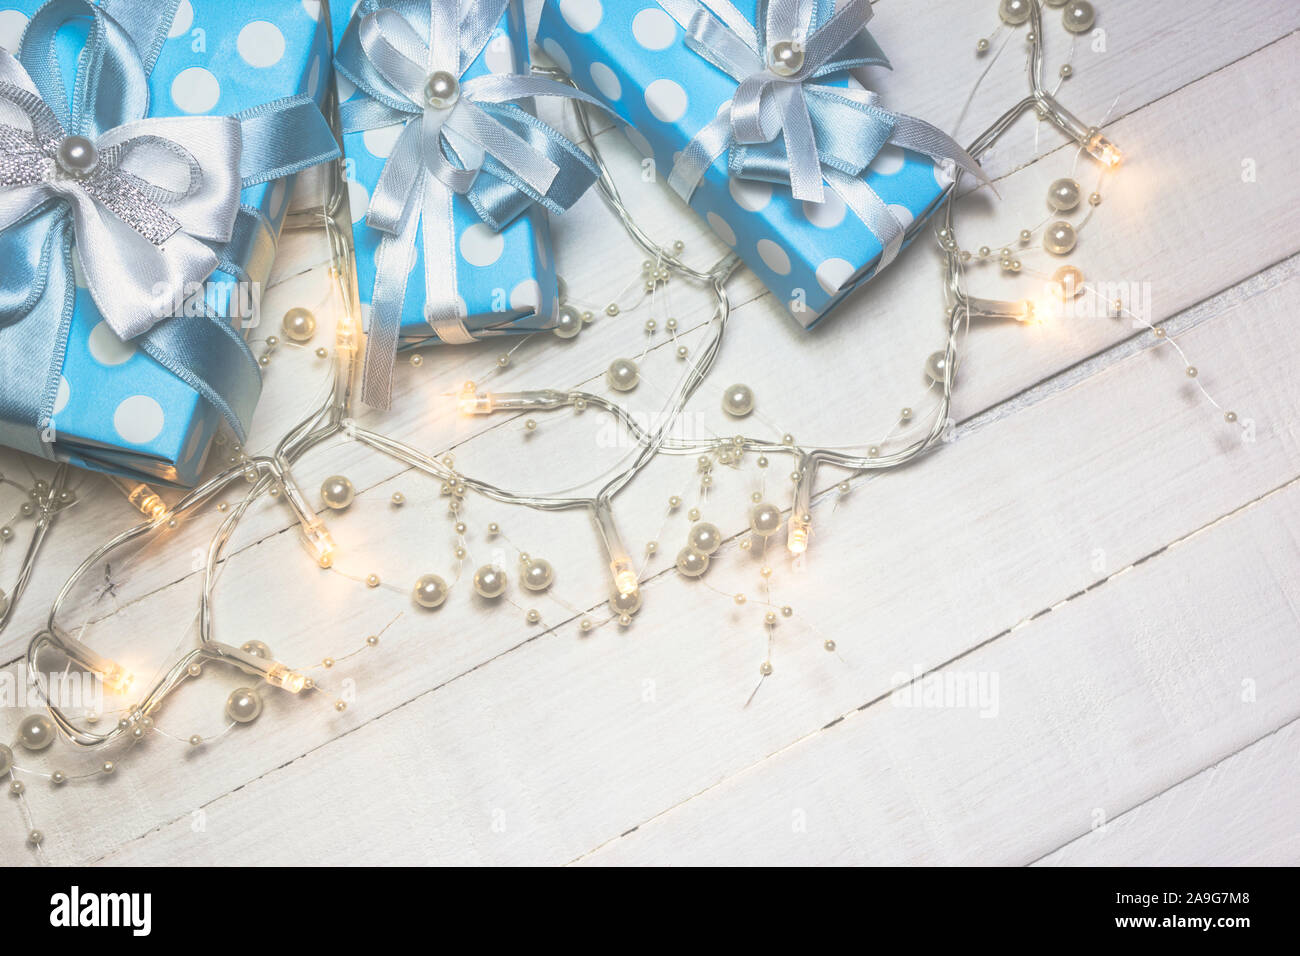 Vue de dessus de cadeaux bleu avec ruban blanc et bleu et décoré avec des lumières des perles sur fond en bois blanc, avec l'exemplaire de l'espace. Tons Vintage phot Banque D'Images